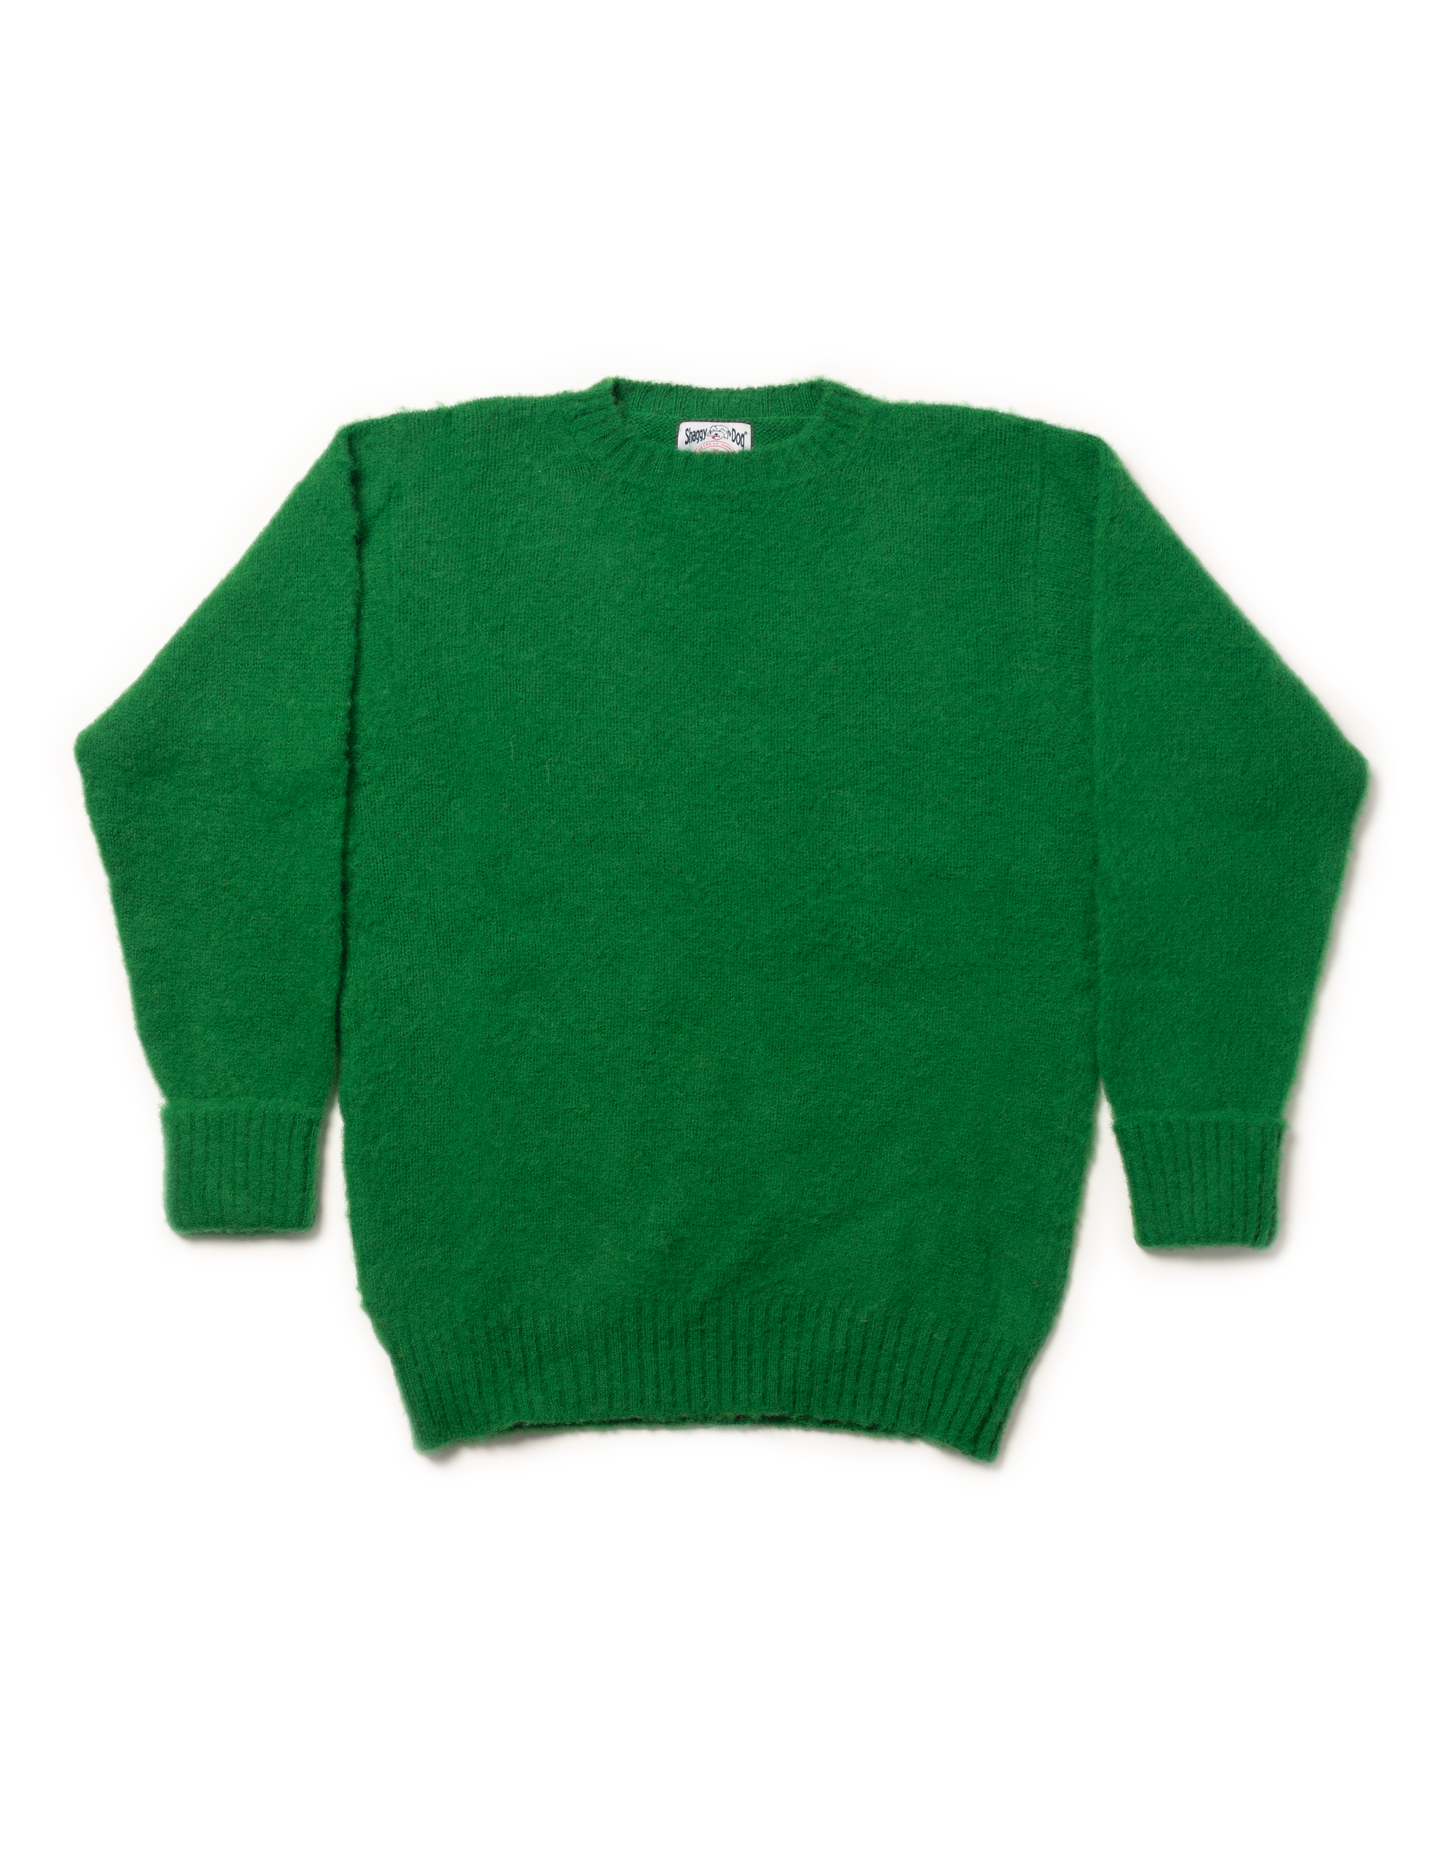 Kellysweate【REJINA PYO】　Kelly sweater